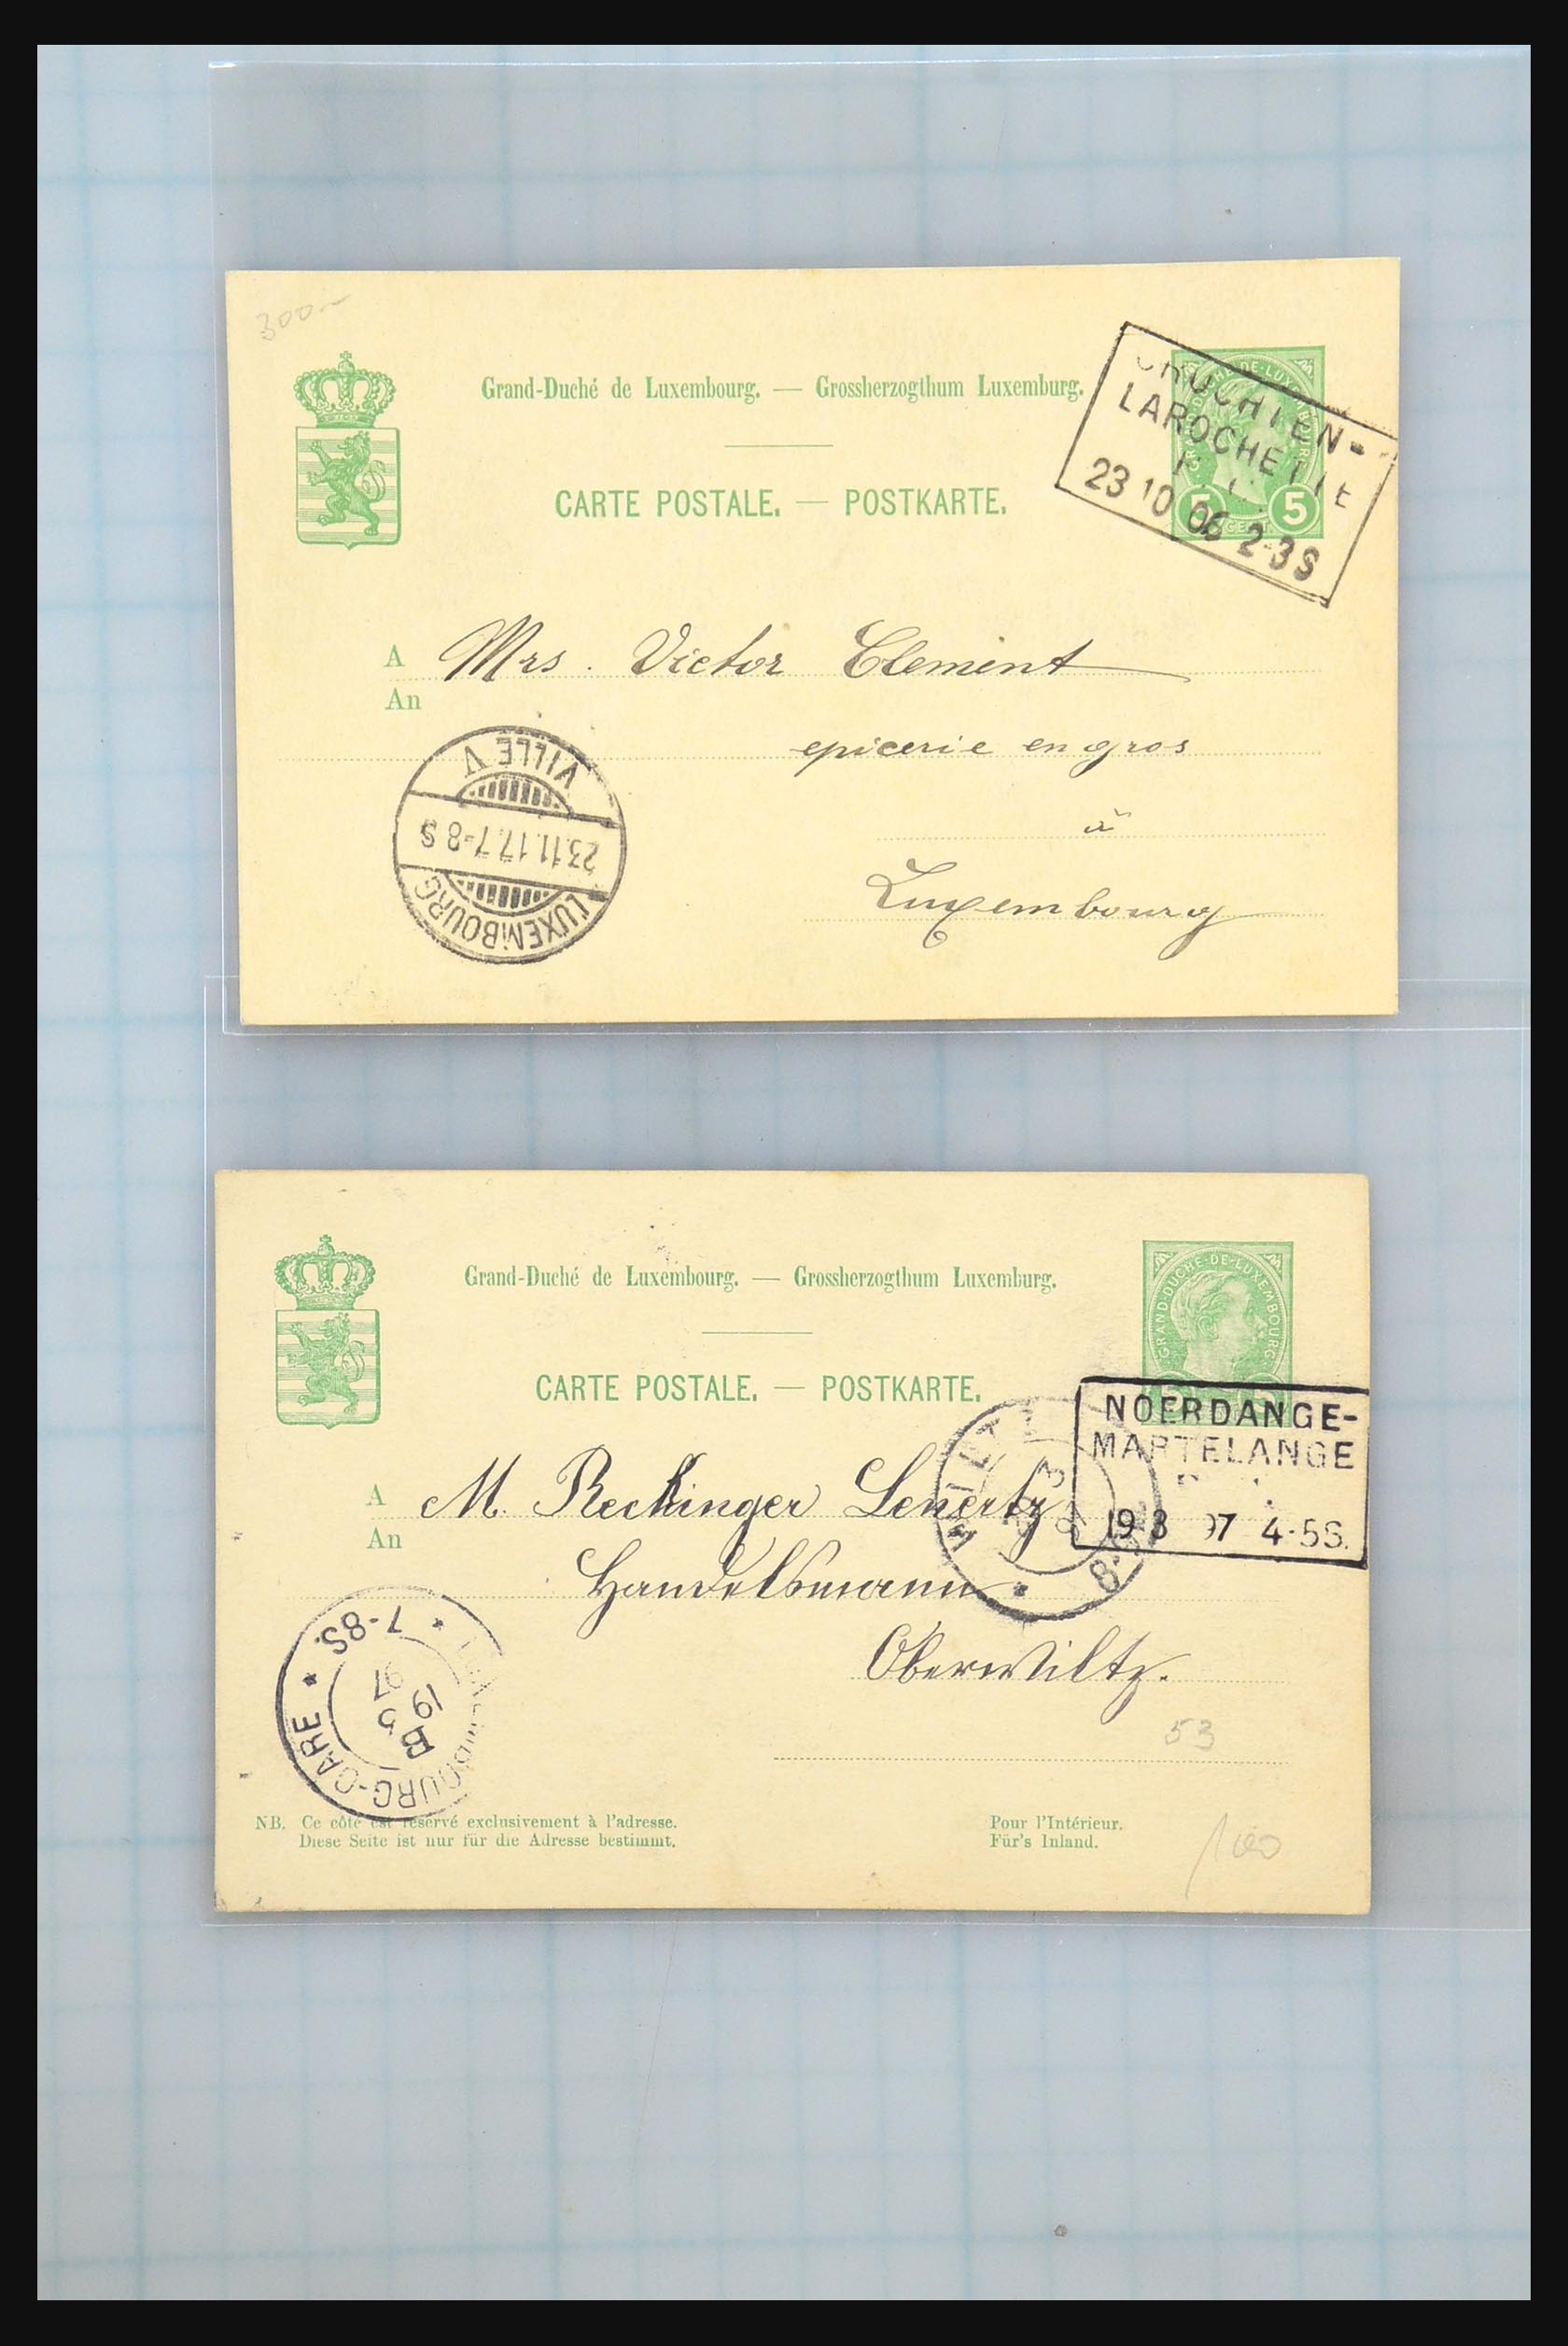 31358 055 - 31358 Portugal/Luxemburg/Griekenland brieven 1880-1960.